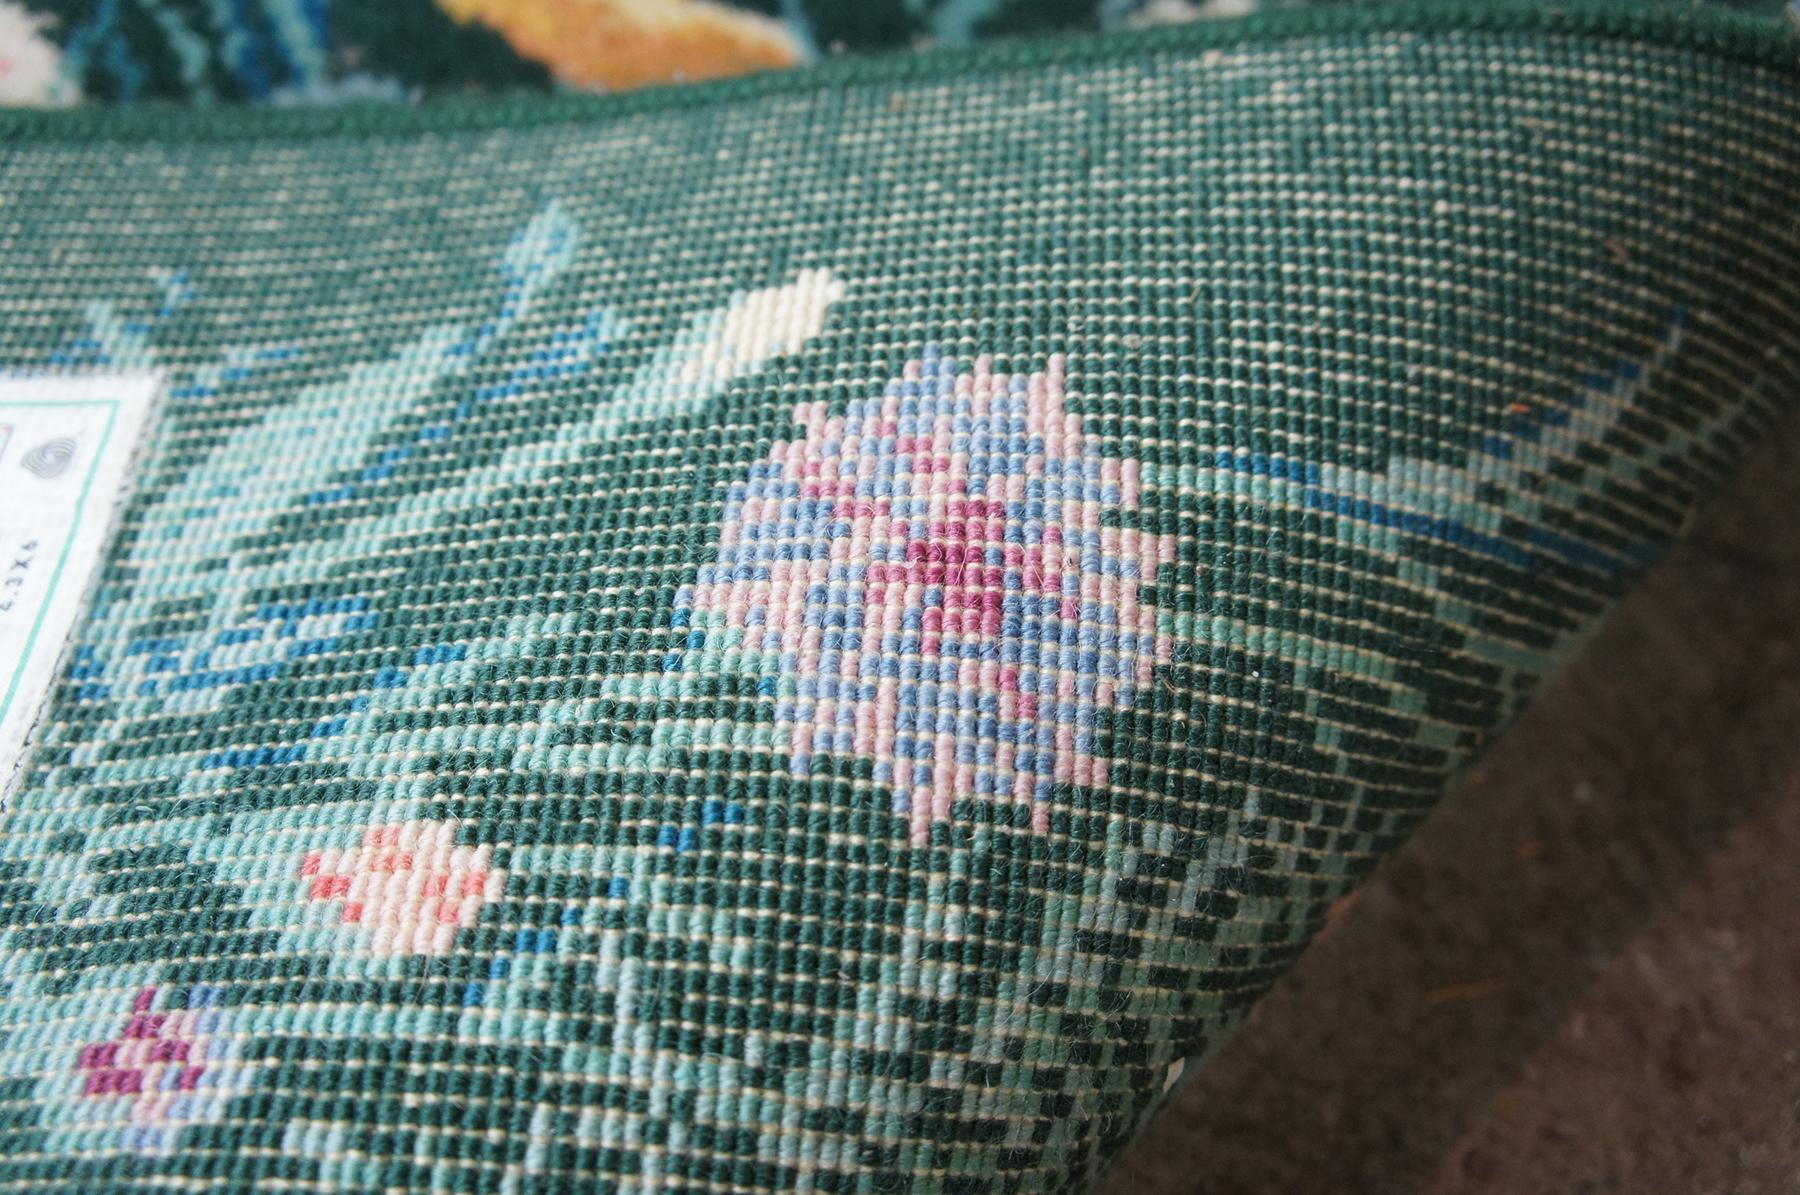 Karastan 100% Wool Garden of Eden Wildflowers Area Rug Carpet 509/9751 2